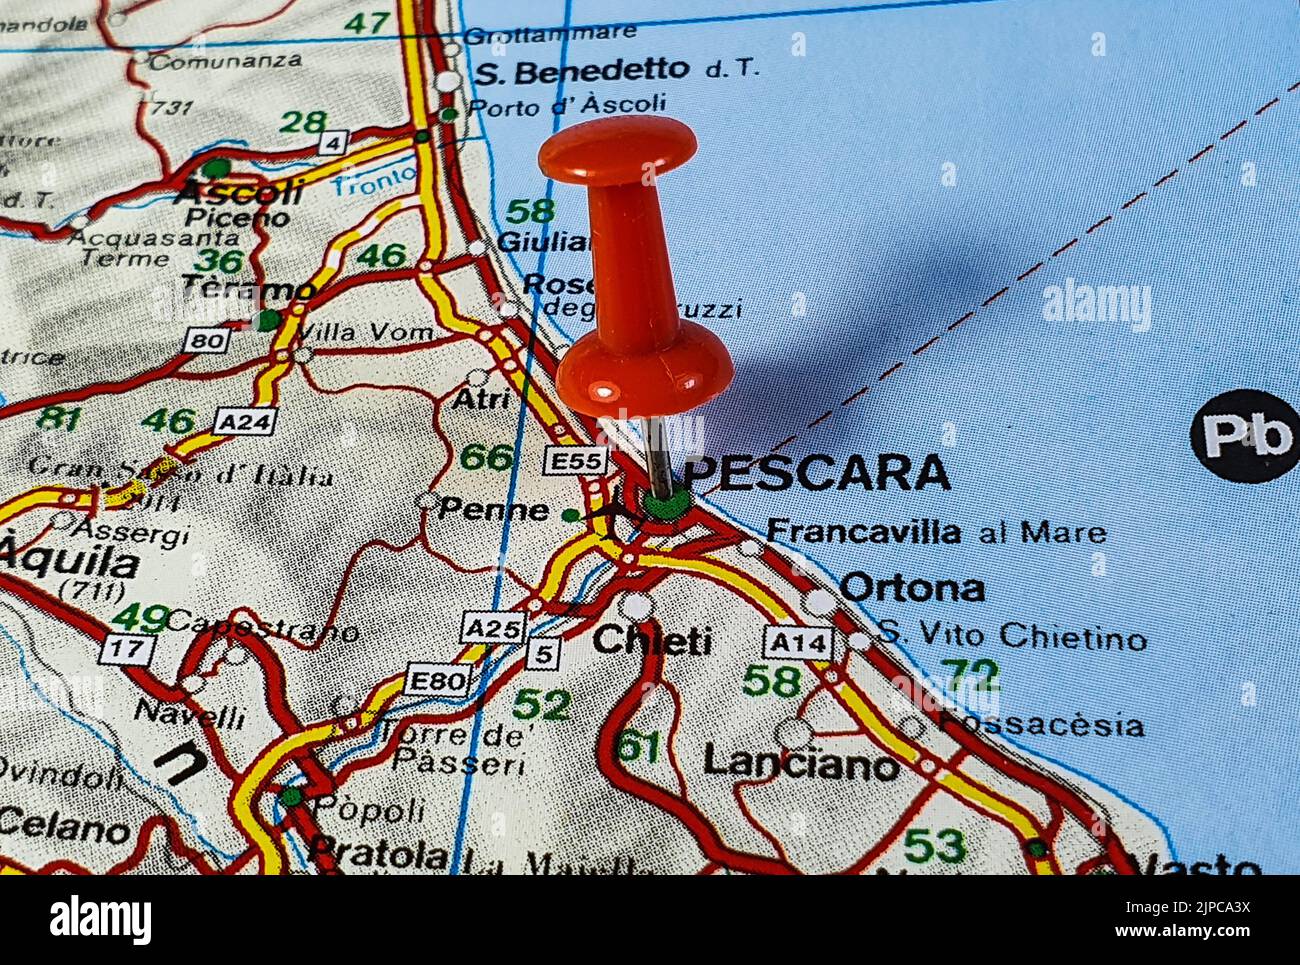 Una località della città di Pescara fissata su una mappa dell'Italia Foto Stock